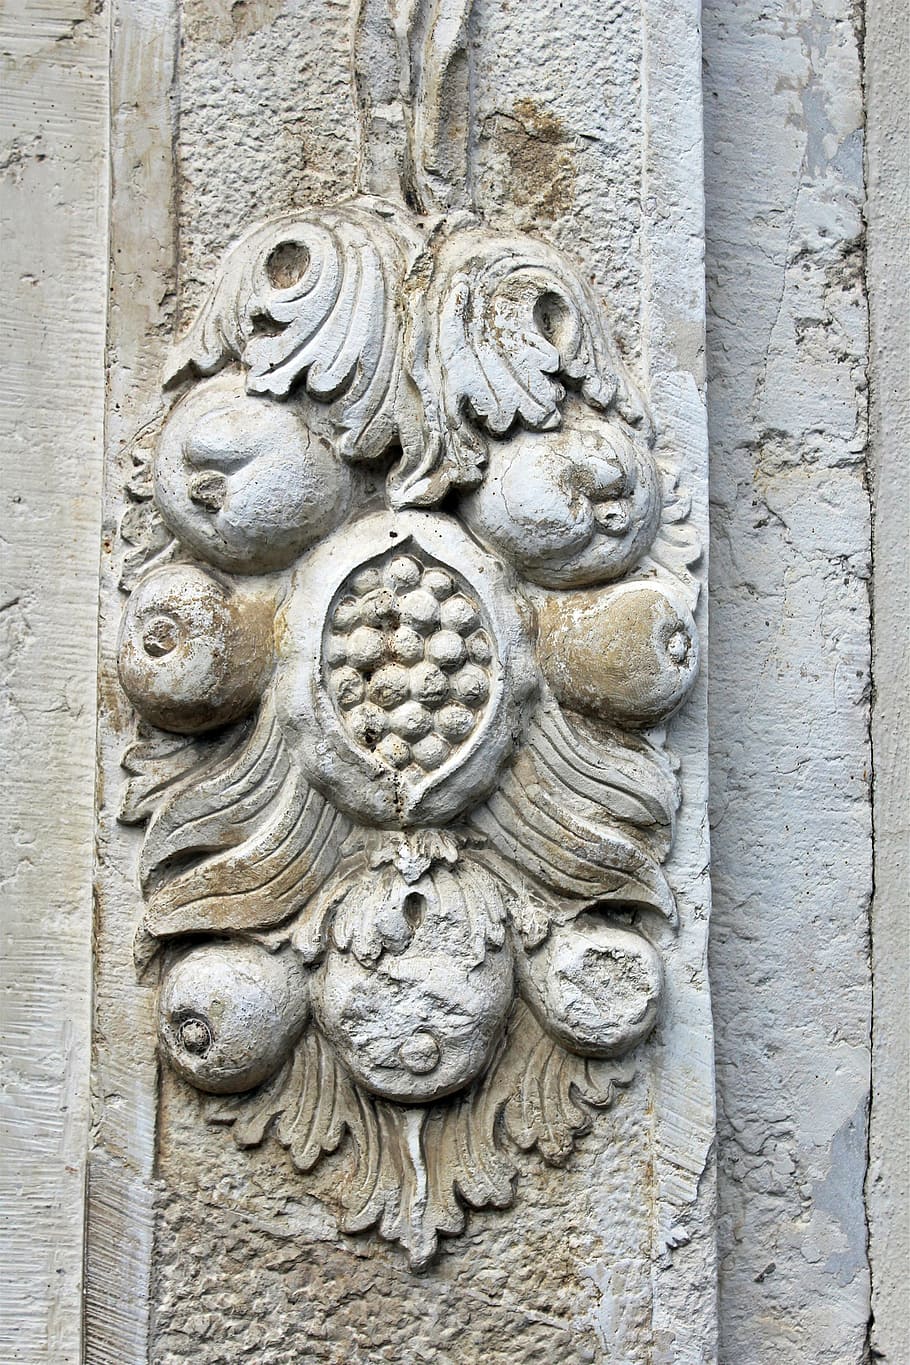 relief plesteran, batu, historis, tua, monumen, berbatu, kota tua, abad pertengahan, fruechterelief, ornamen